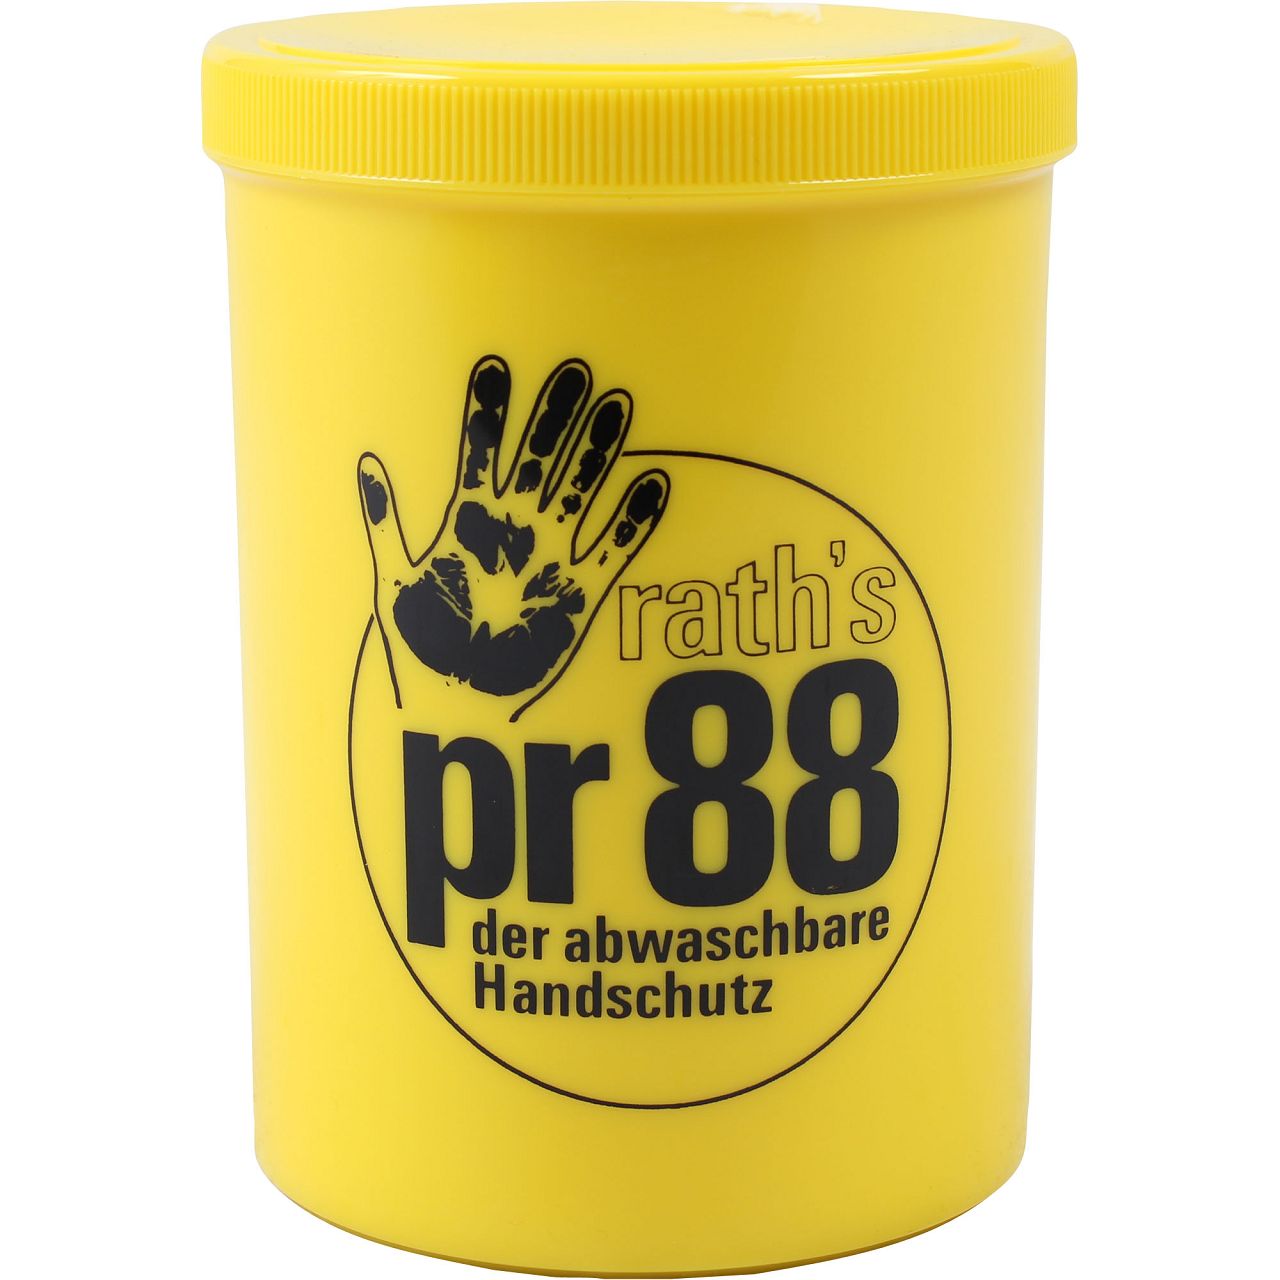 RATH's Creme PR 88 Hautschutz der abwaschbare Handschuh Handcreme 1L 1 Liter